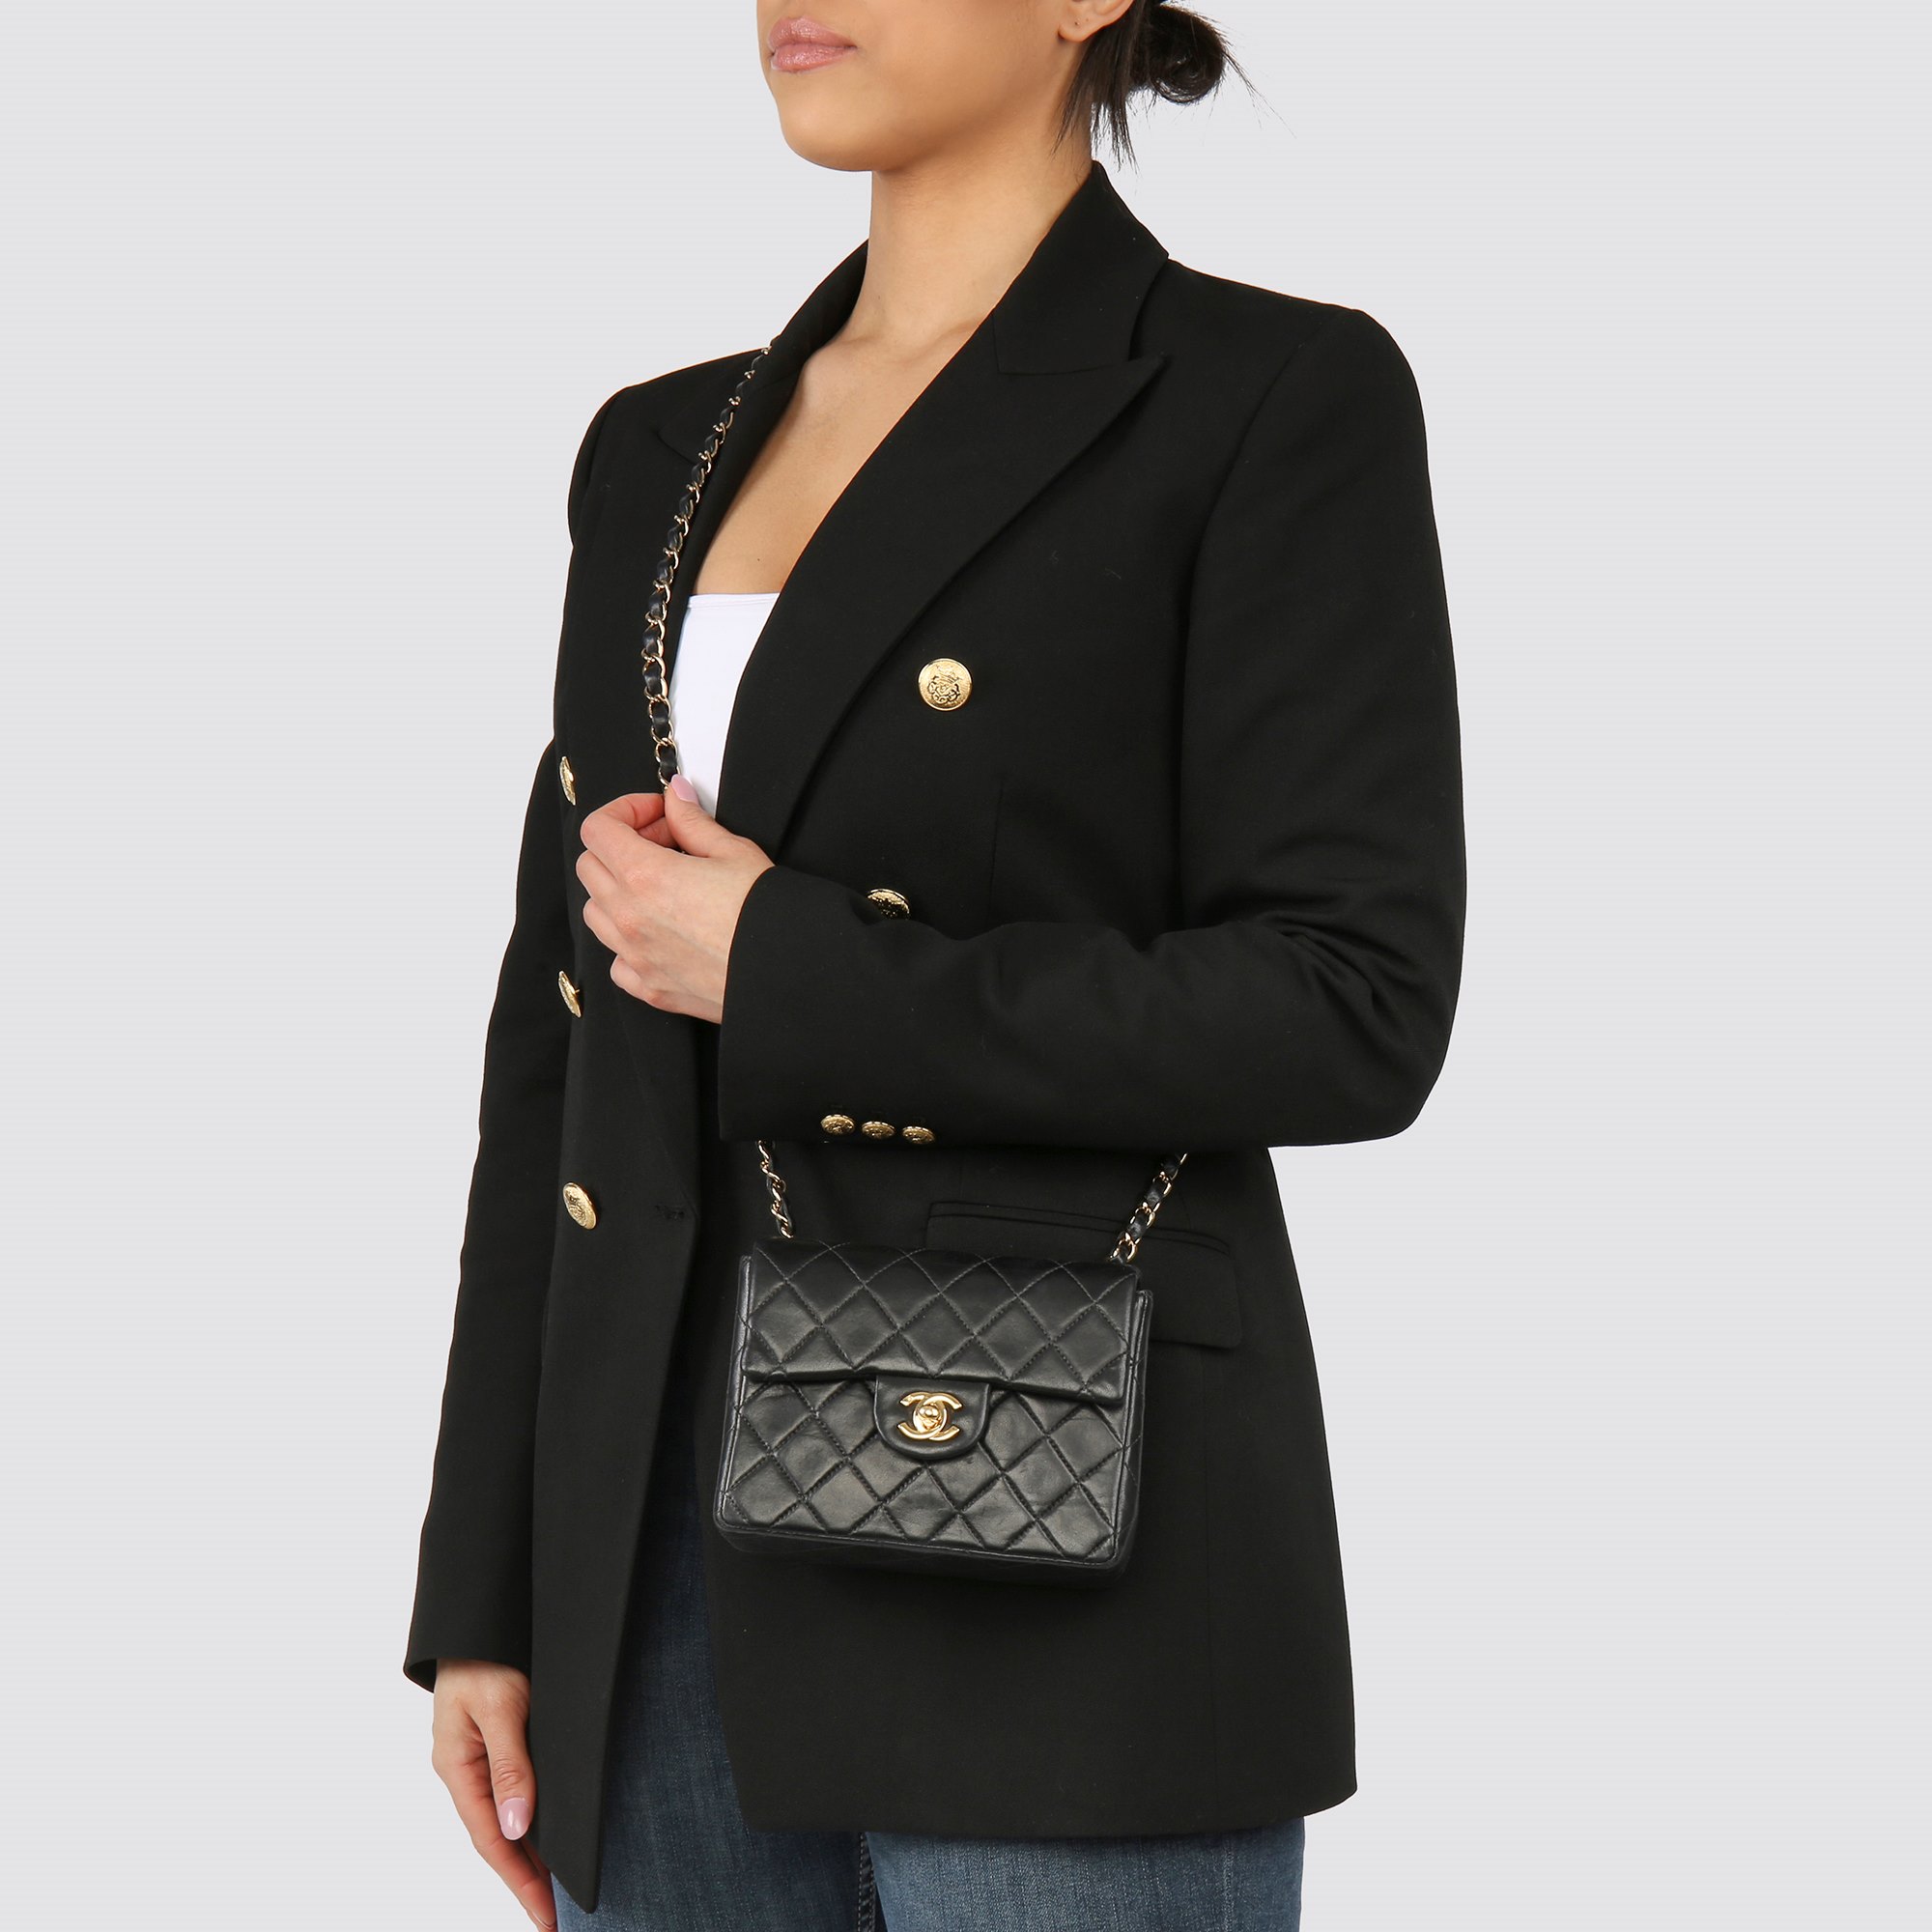 Chanel mini flap bag